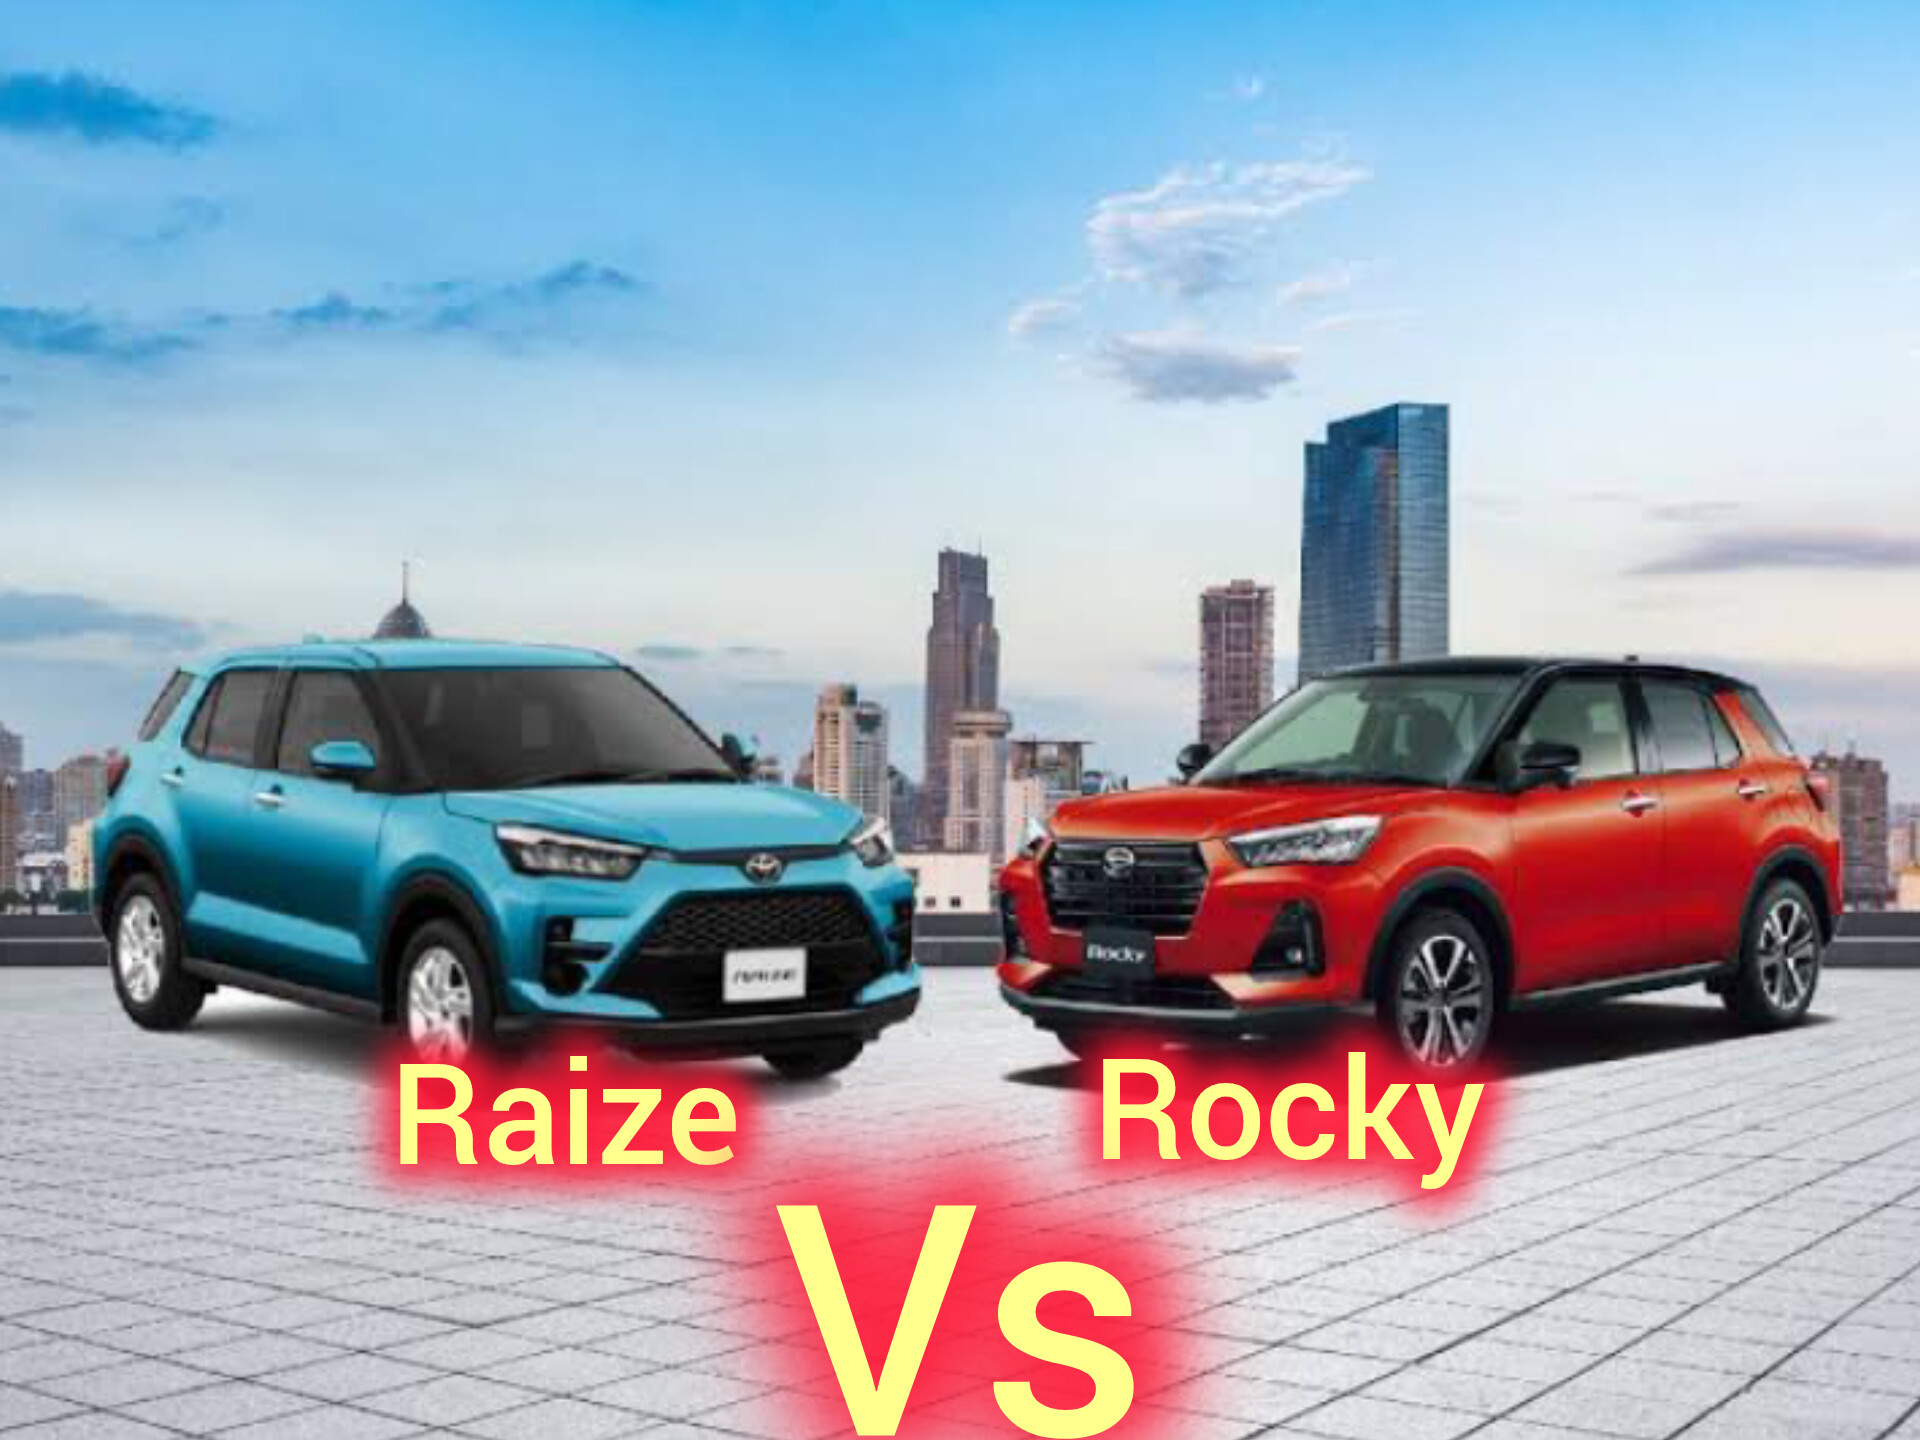 Toyota Raize Vs Daihatsu Rocky: Harga Terjangkau Dengan Fitur dan Spesifikasi Canggih, Suka Yang Mana?